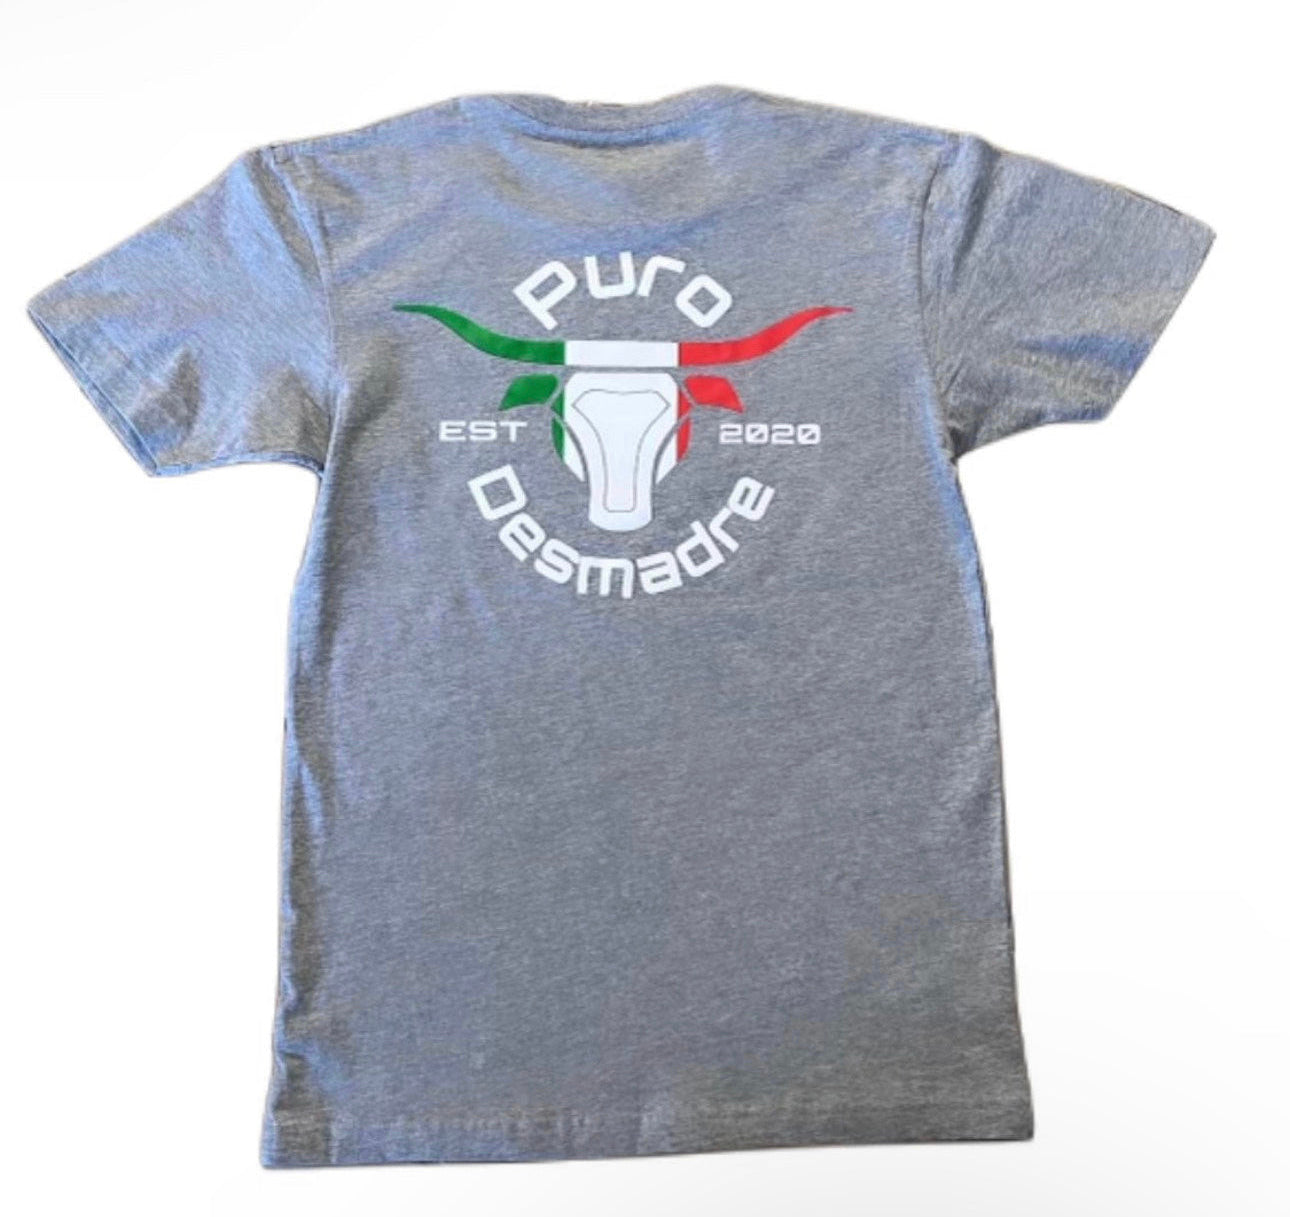 Puro Desmadre Women's T-Shirt - classic - Puro Desmadre Brand